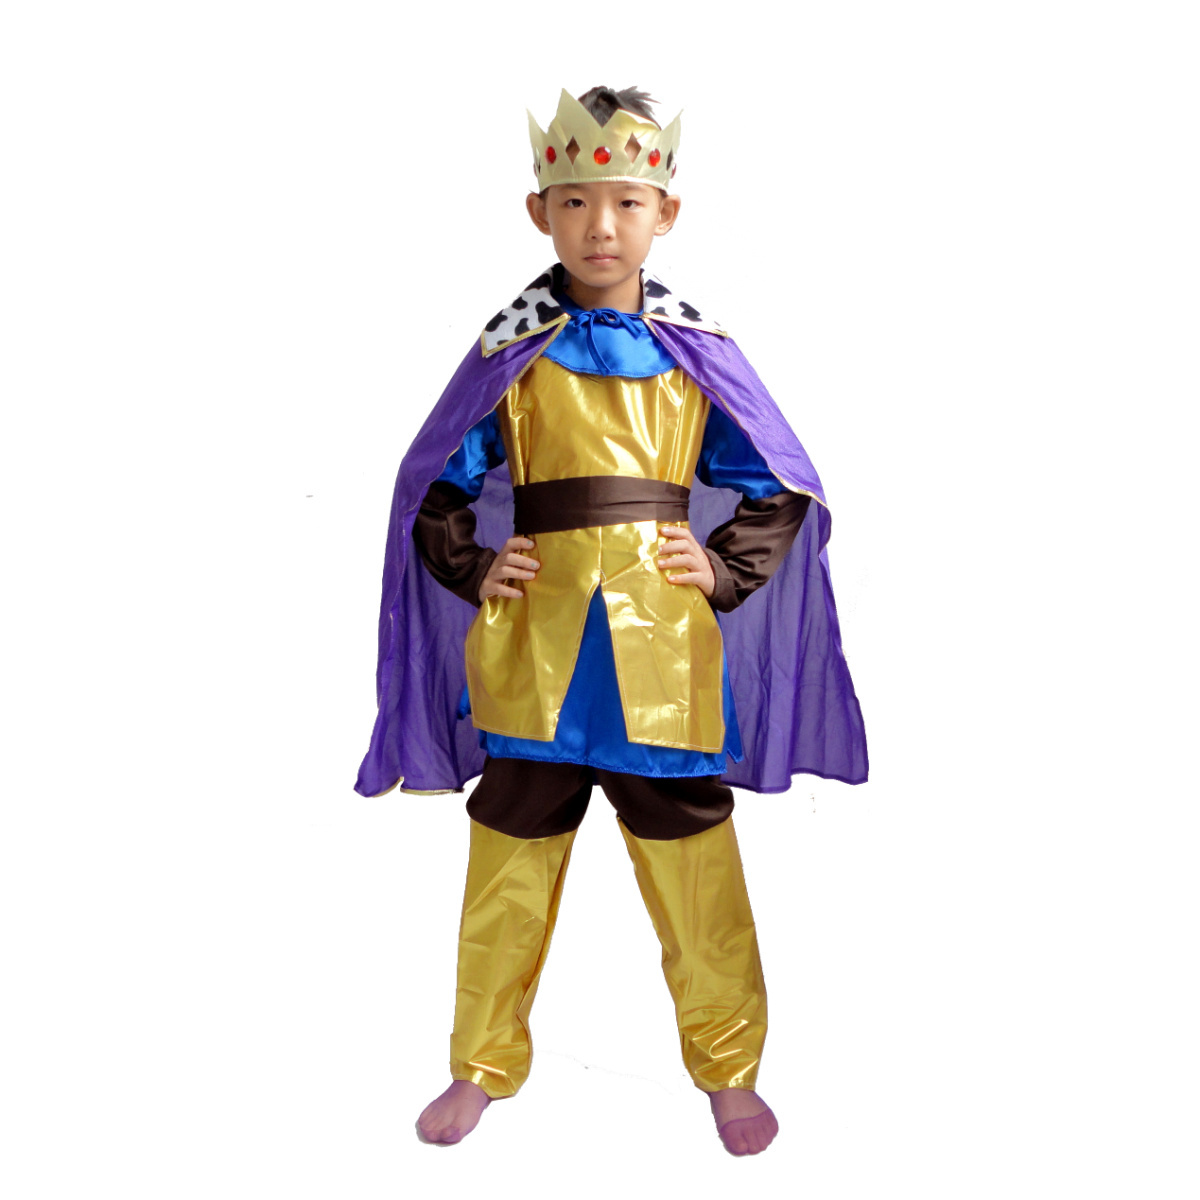 万圣节儿童王子服装cosplay白马王子童话故事角色扮演服装欧美风-阿里巴巴